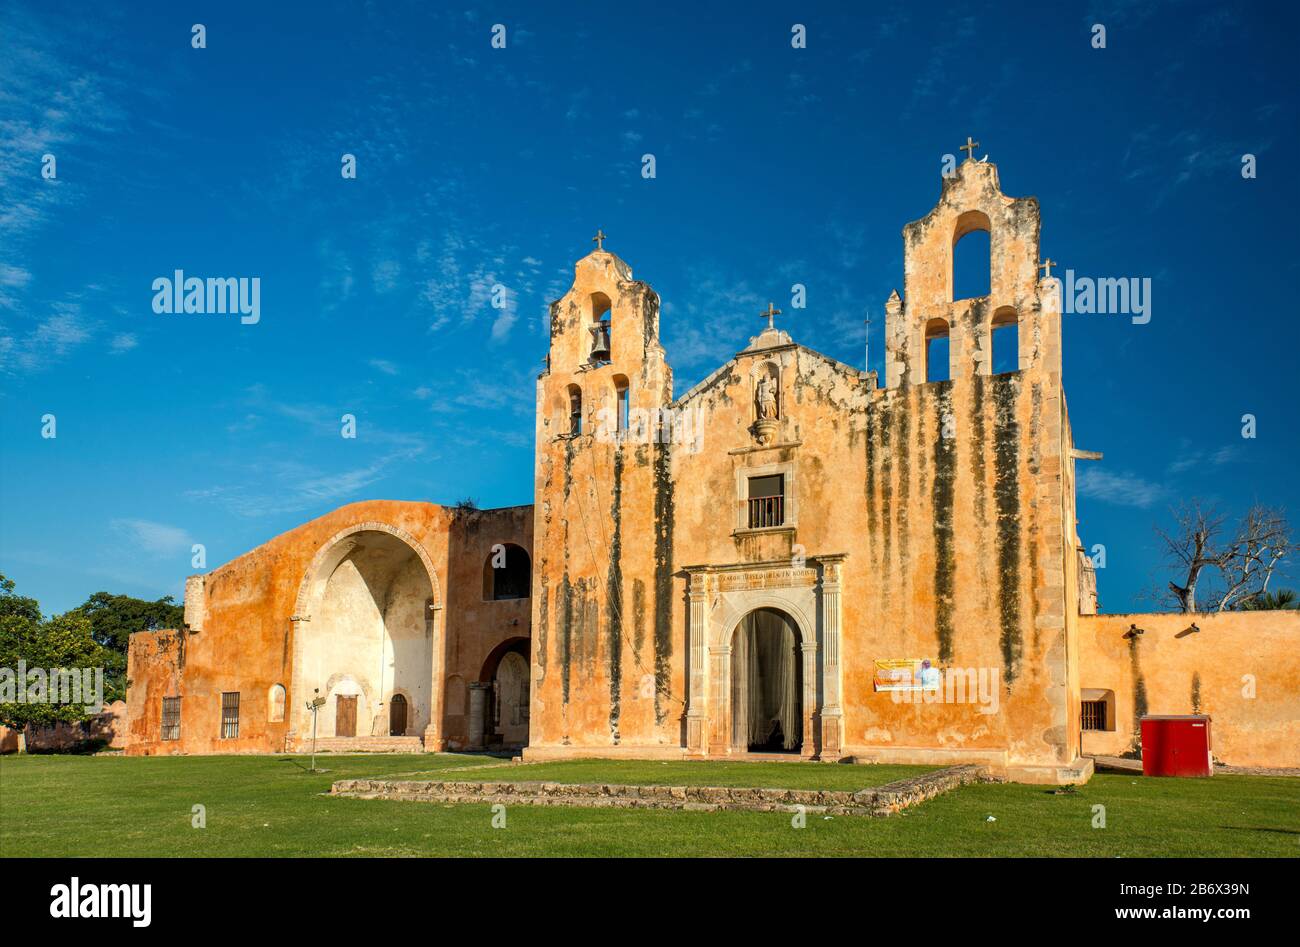 Parroquia y Exconvento de San Miguel Arcangel, Franciscan Monastery in Mani, at Ruta de los Conventos, Yucatan state, Mexico Stock Photo